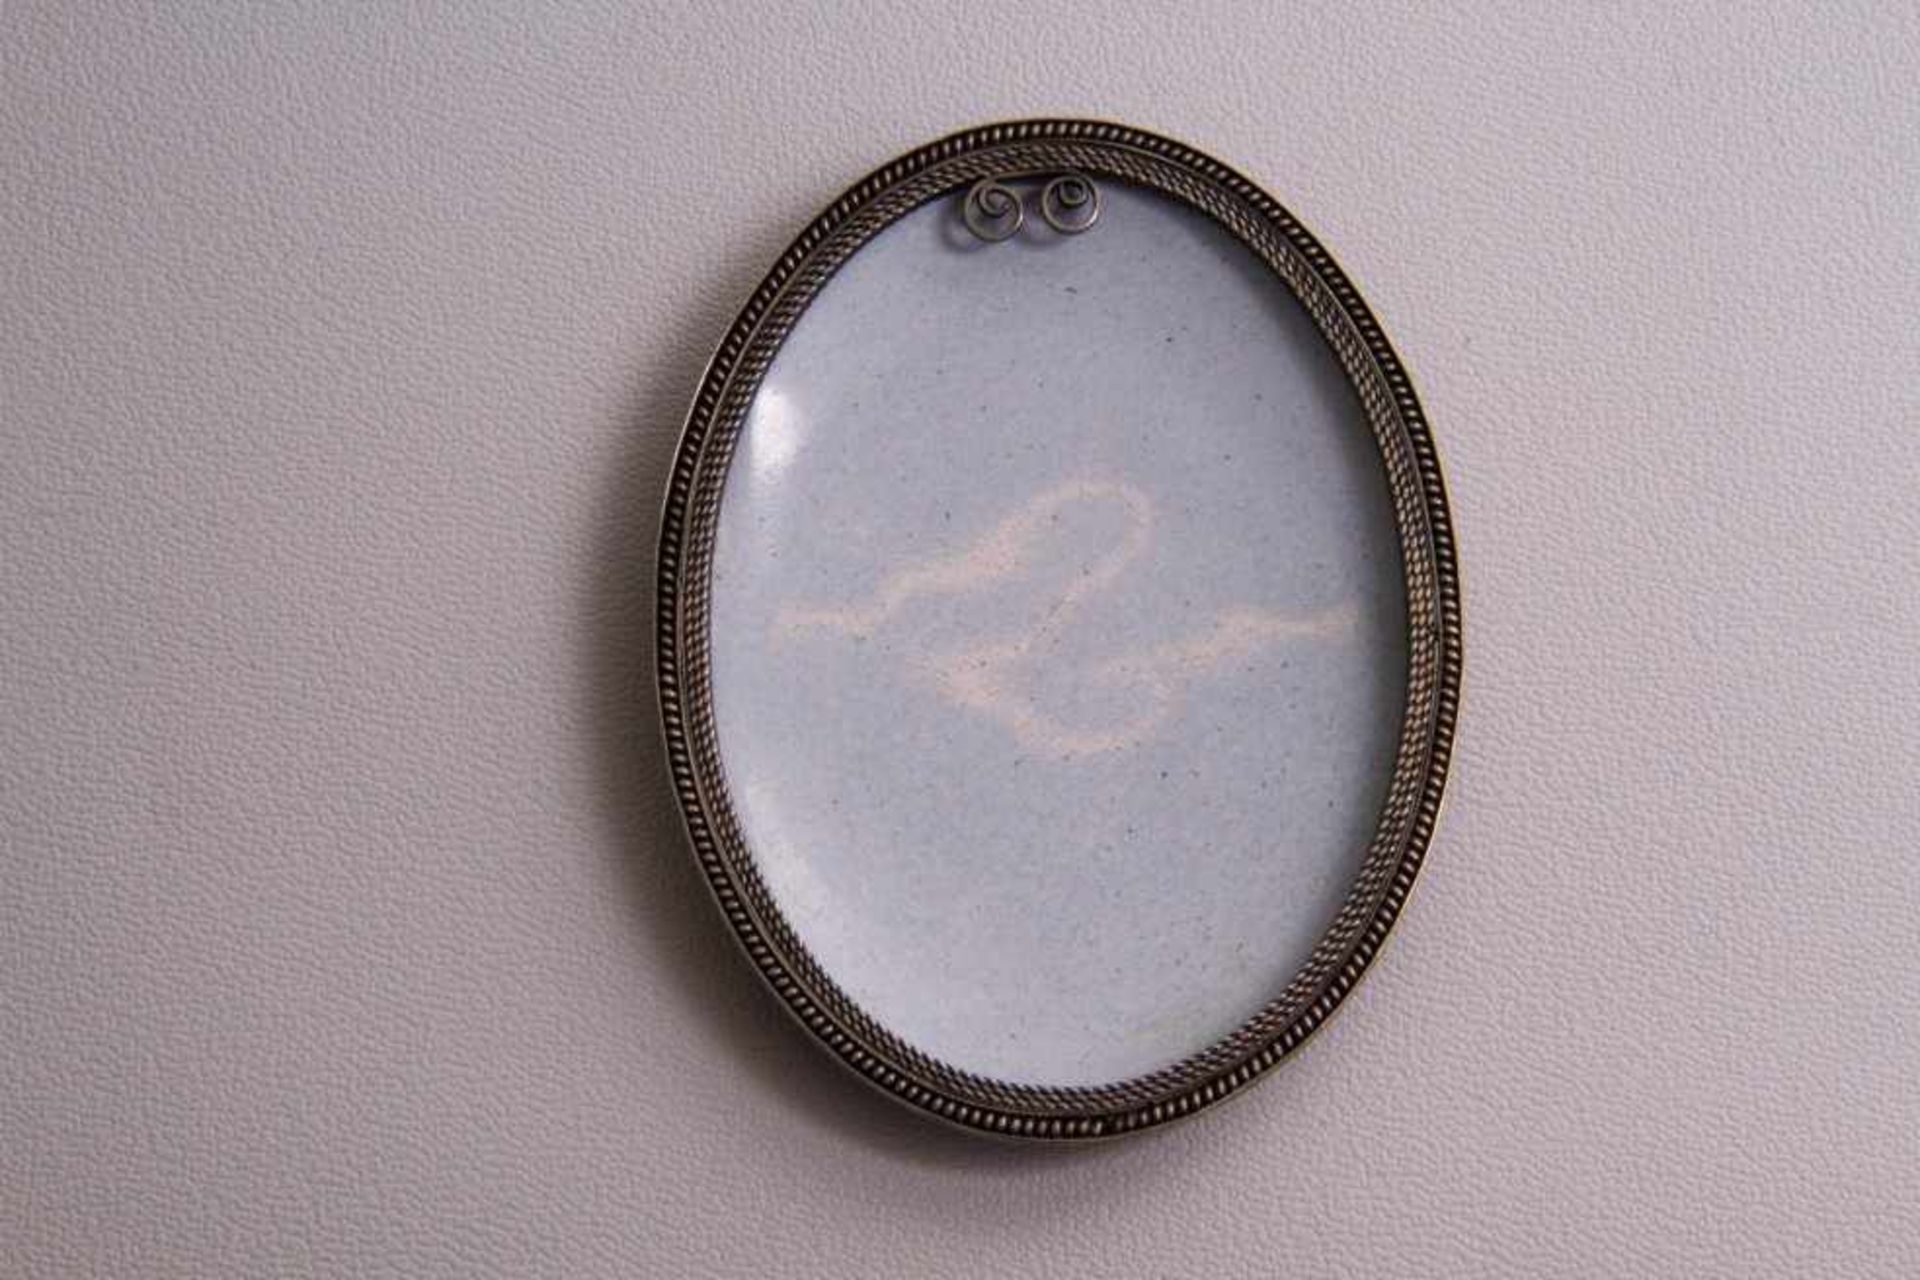 Porzellanplakette, Russland 19. Jh.ovale Form, Silberfassung, polychrome Darstellung einerorthodoxen - Bild 2 aus 2